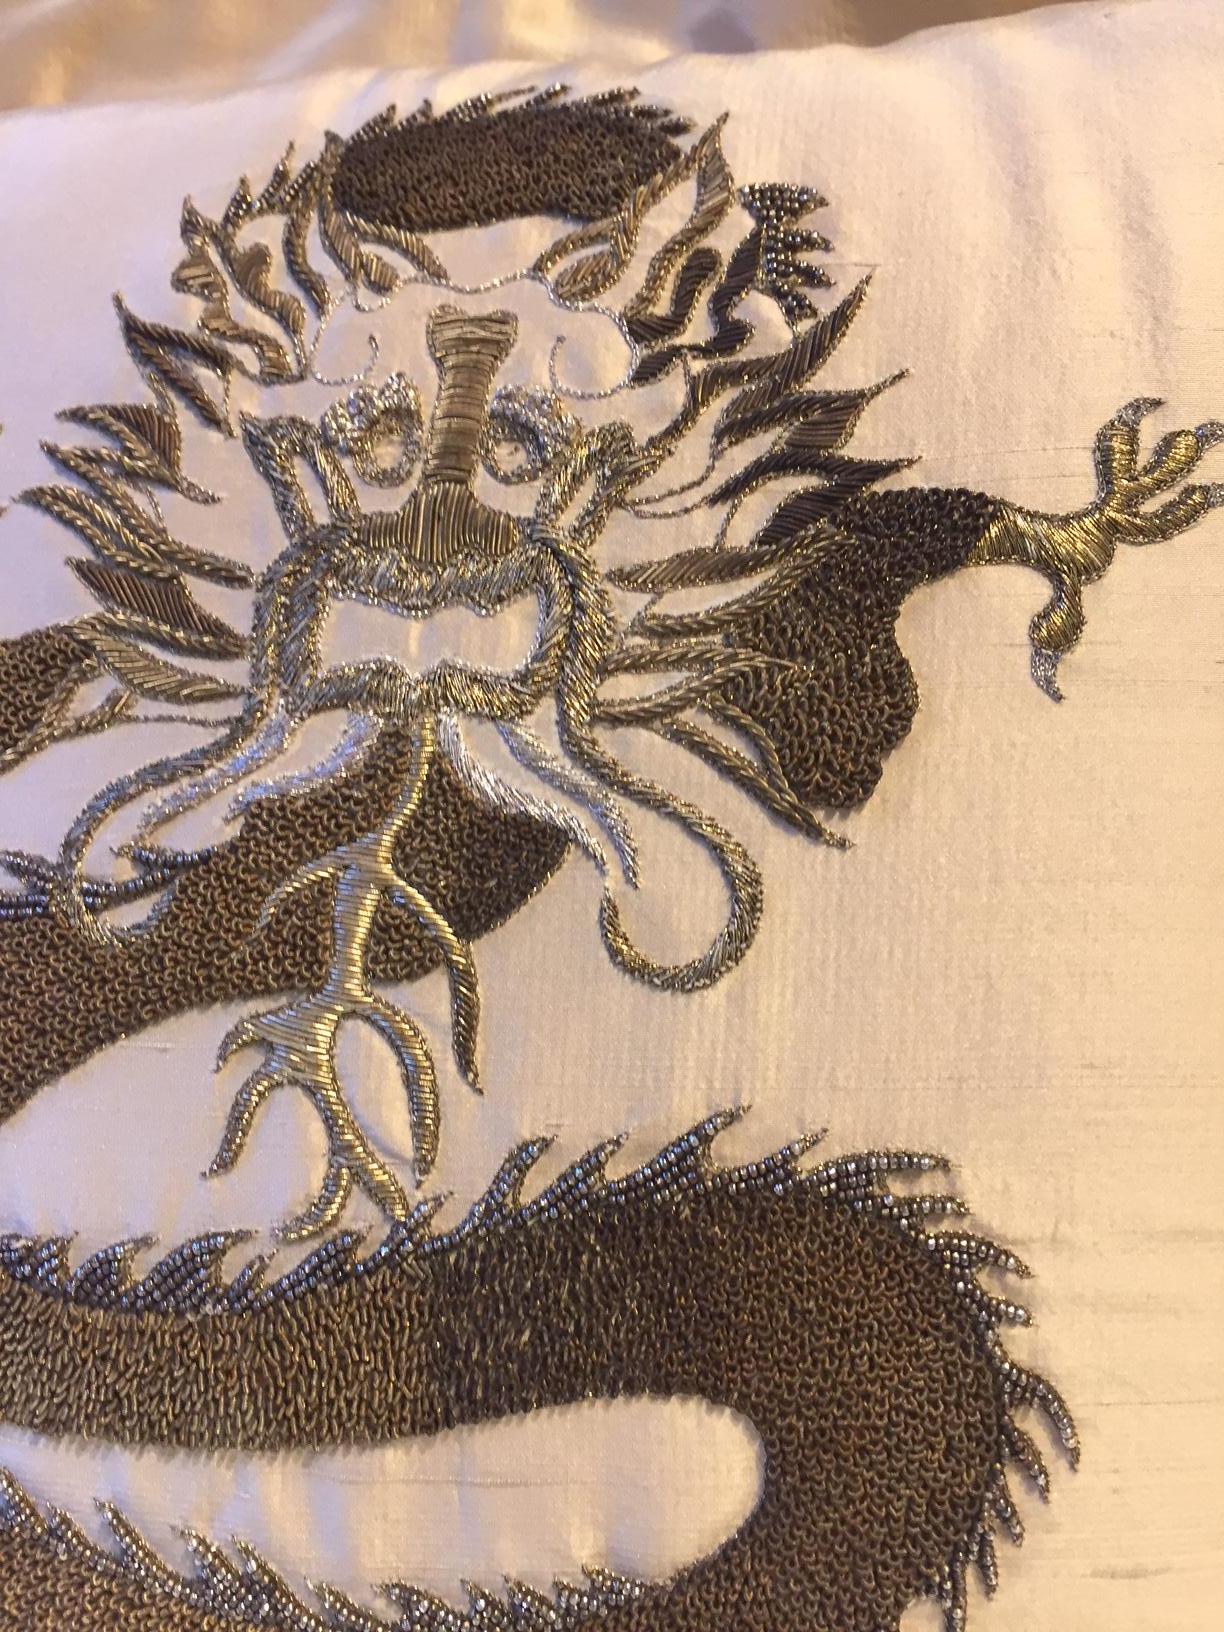 Housse de coussin en soie couleur paille avec motif de dragon brodé à la main avec du fil d'or dans différentes nuances, la housse de coussin a comme finition une bordure 